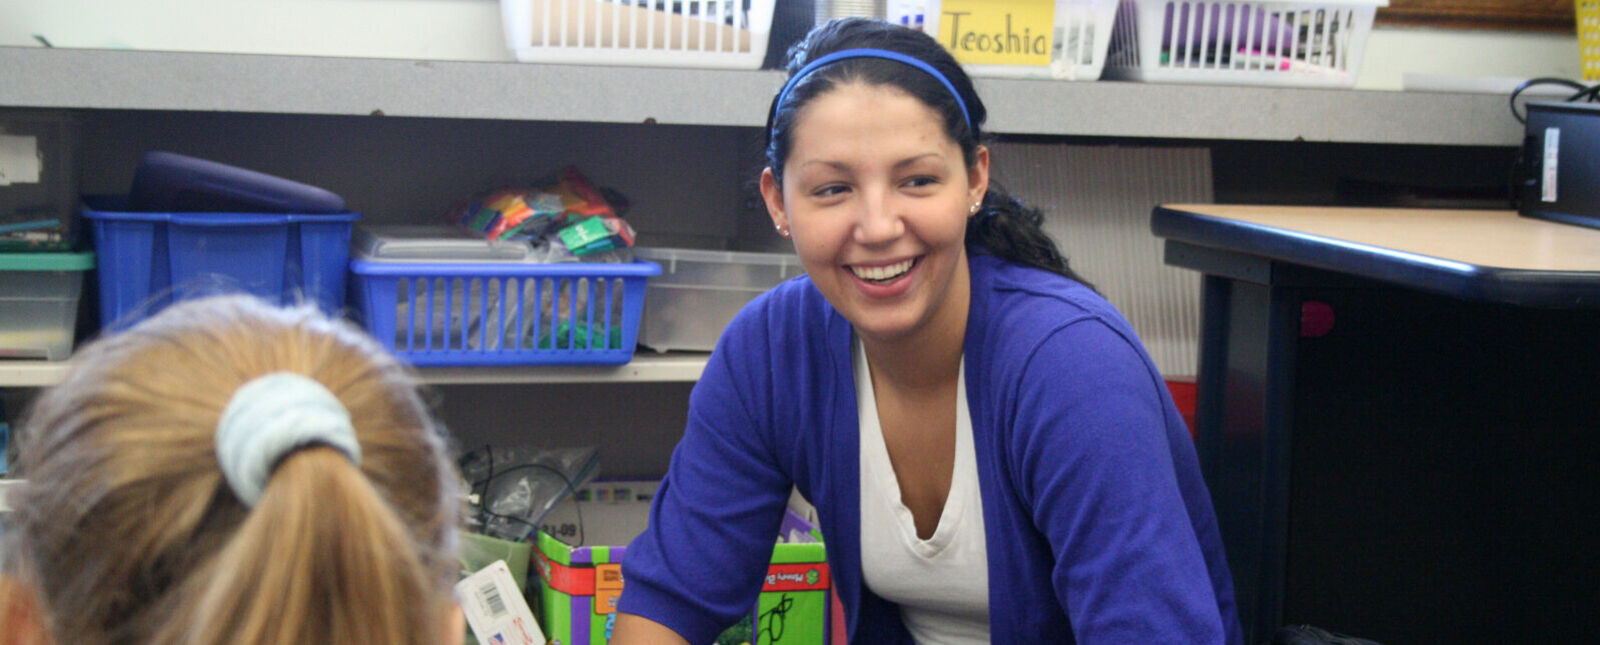 一位女实习教师在教室里和学生一起工作时露出了微笑